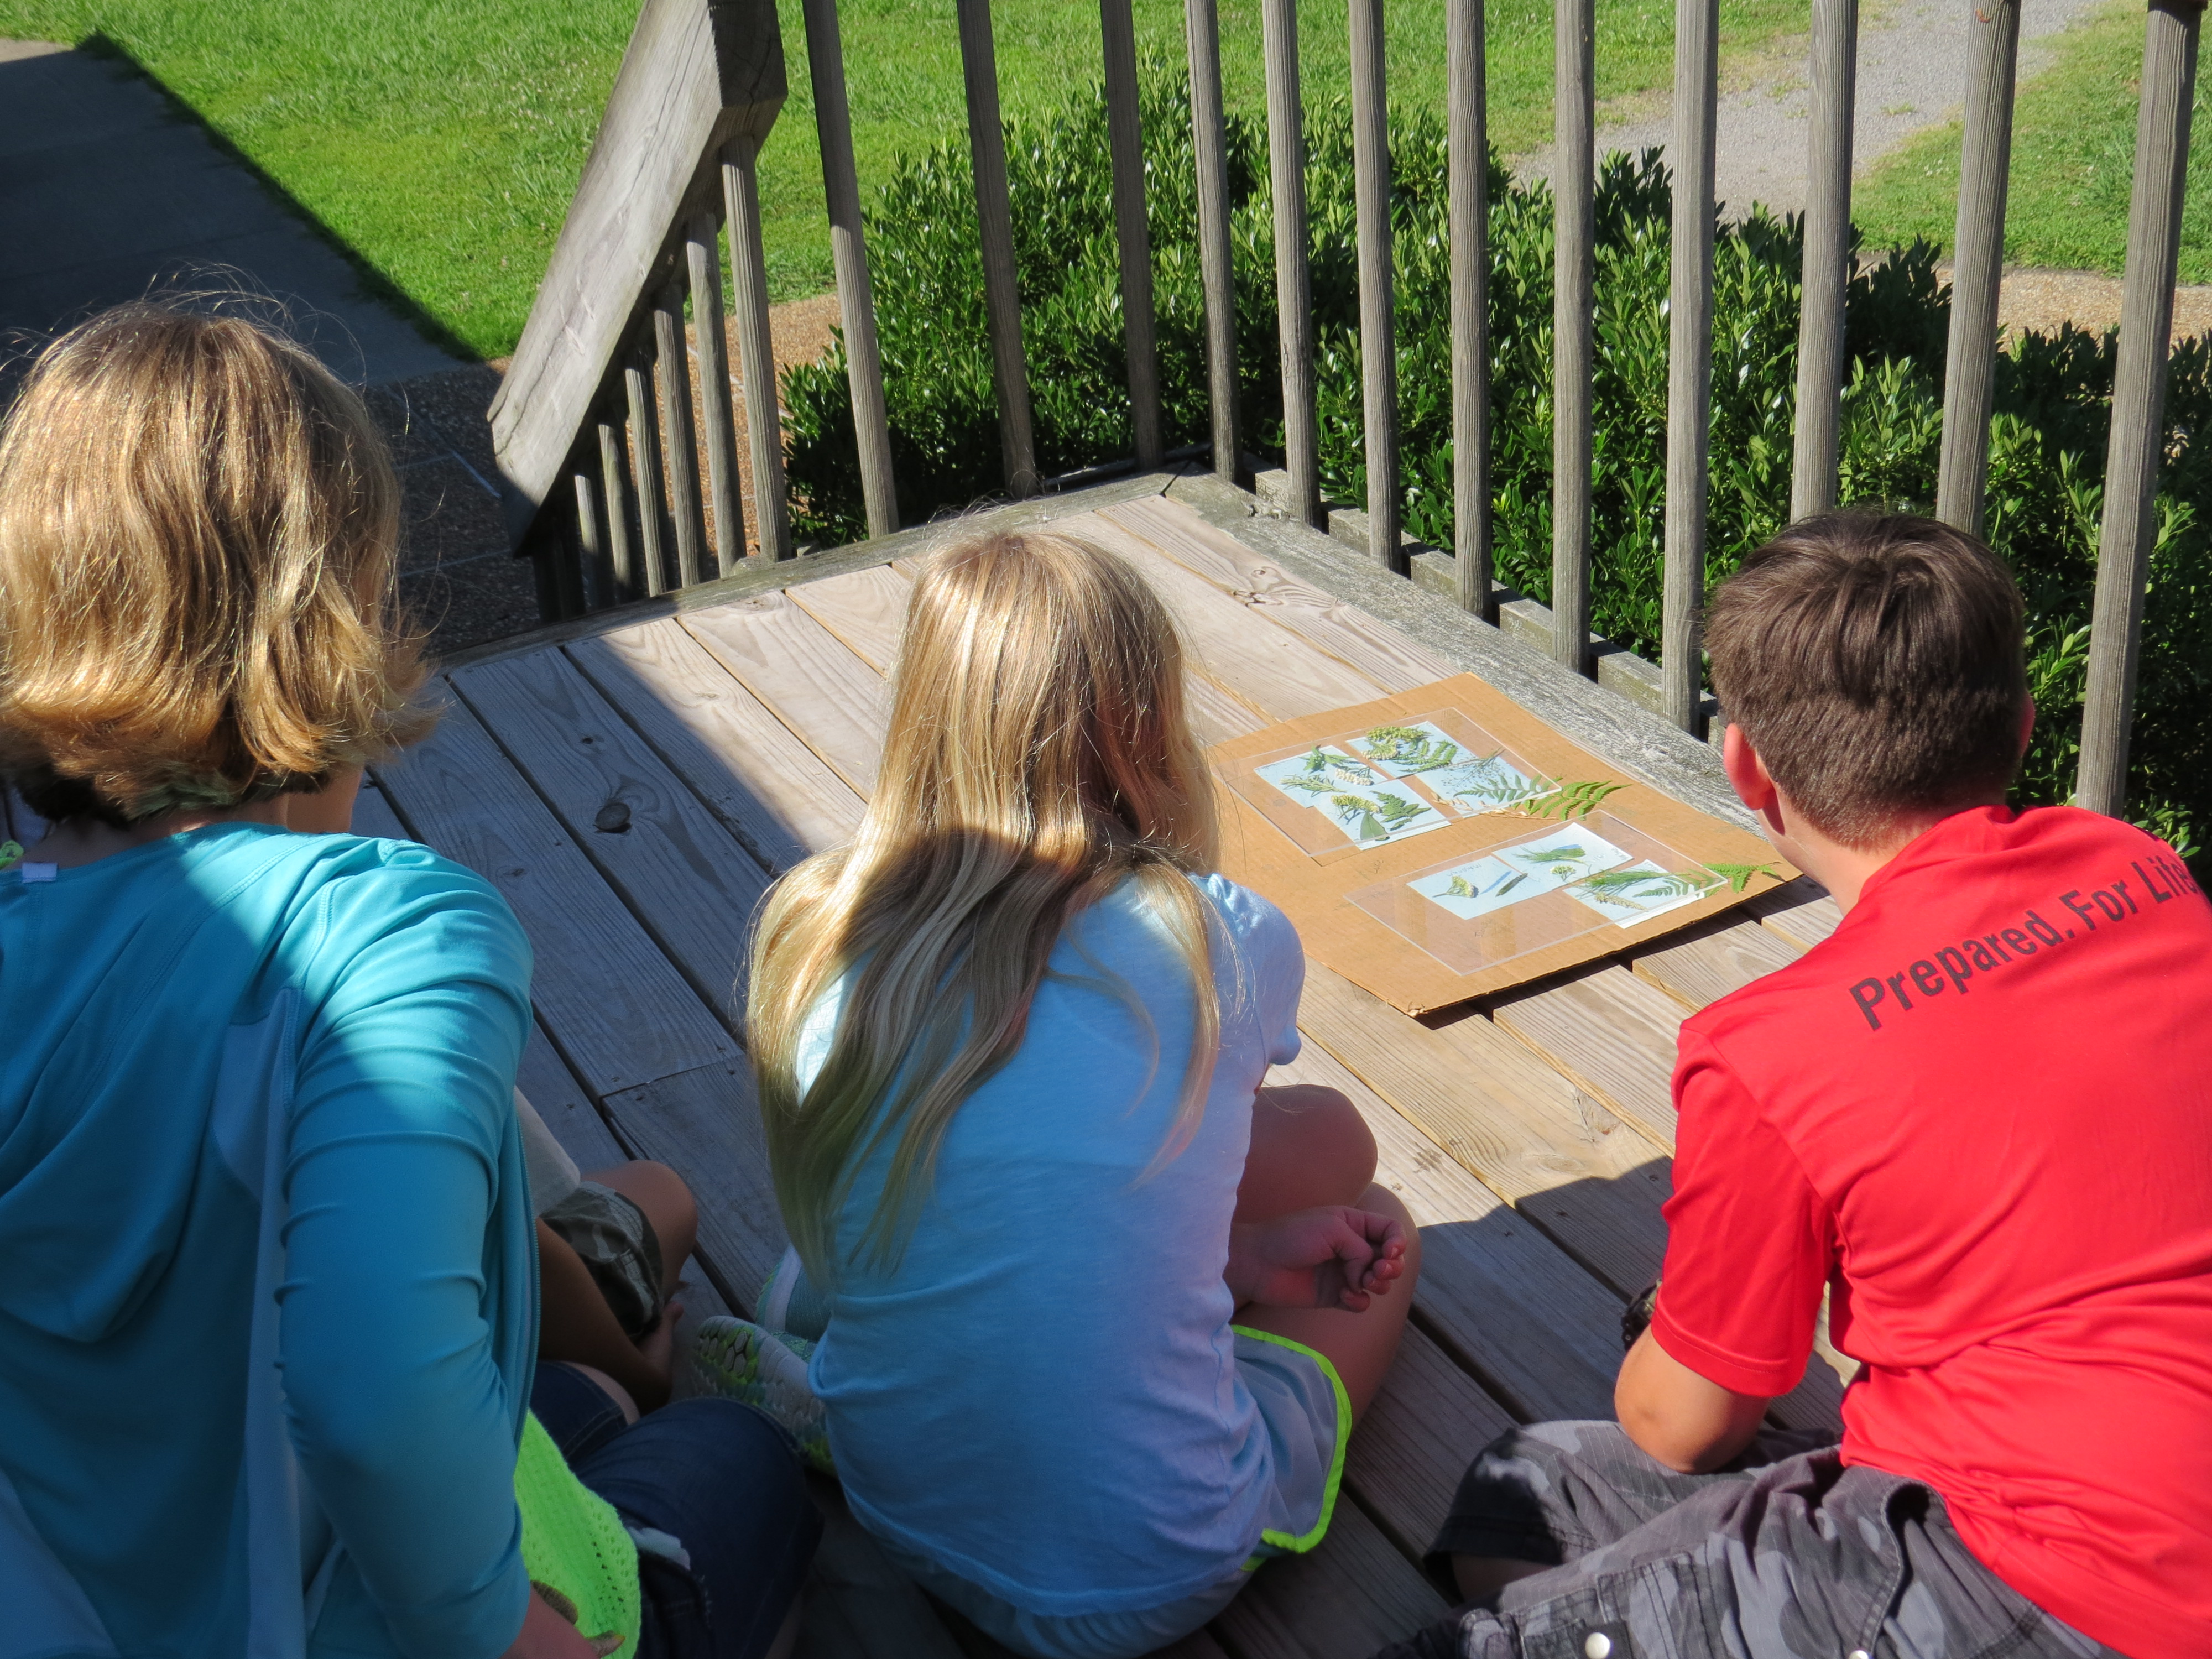 Children on deck watching a Sunprint activity transform during an interpretive program